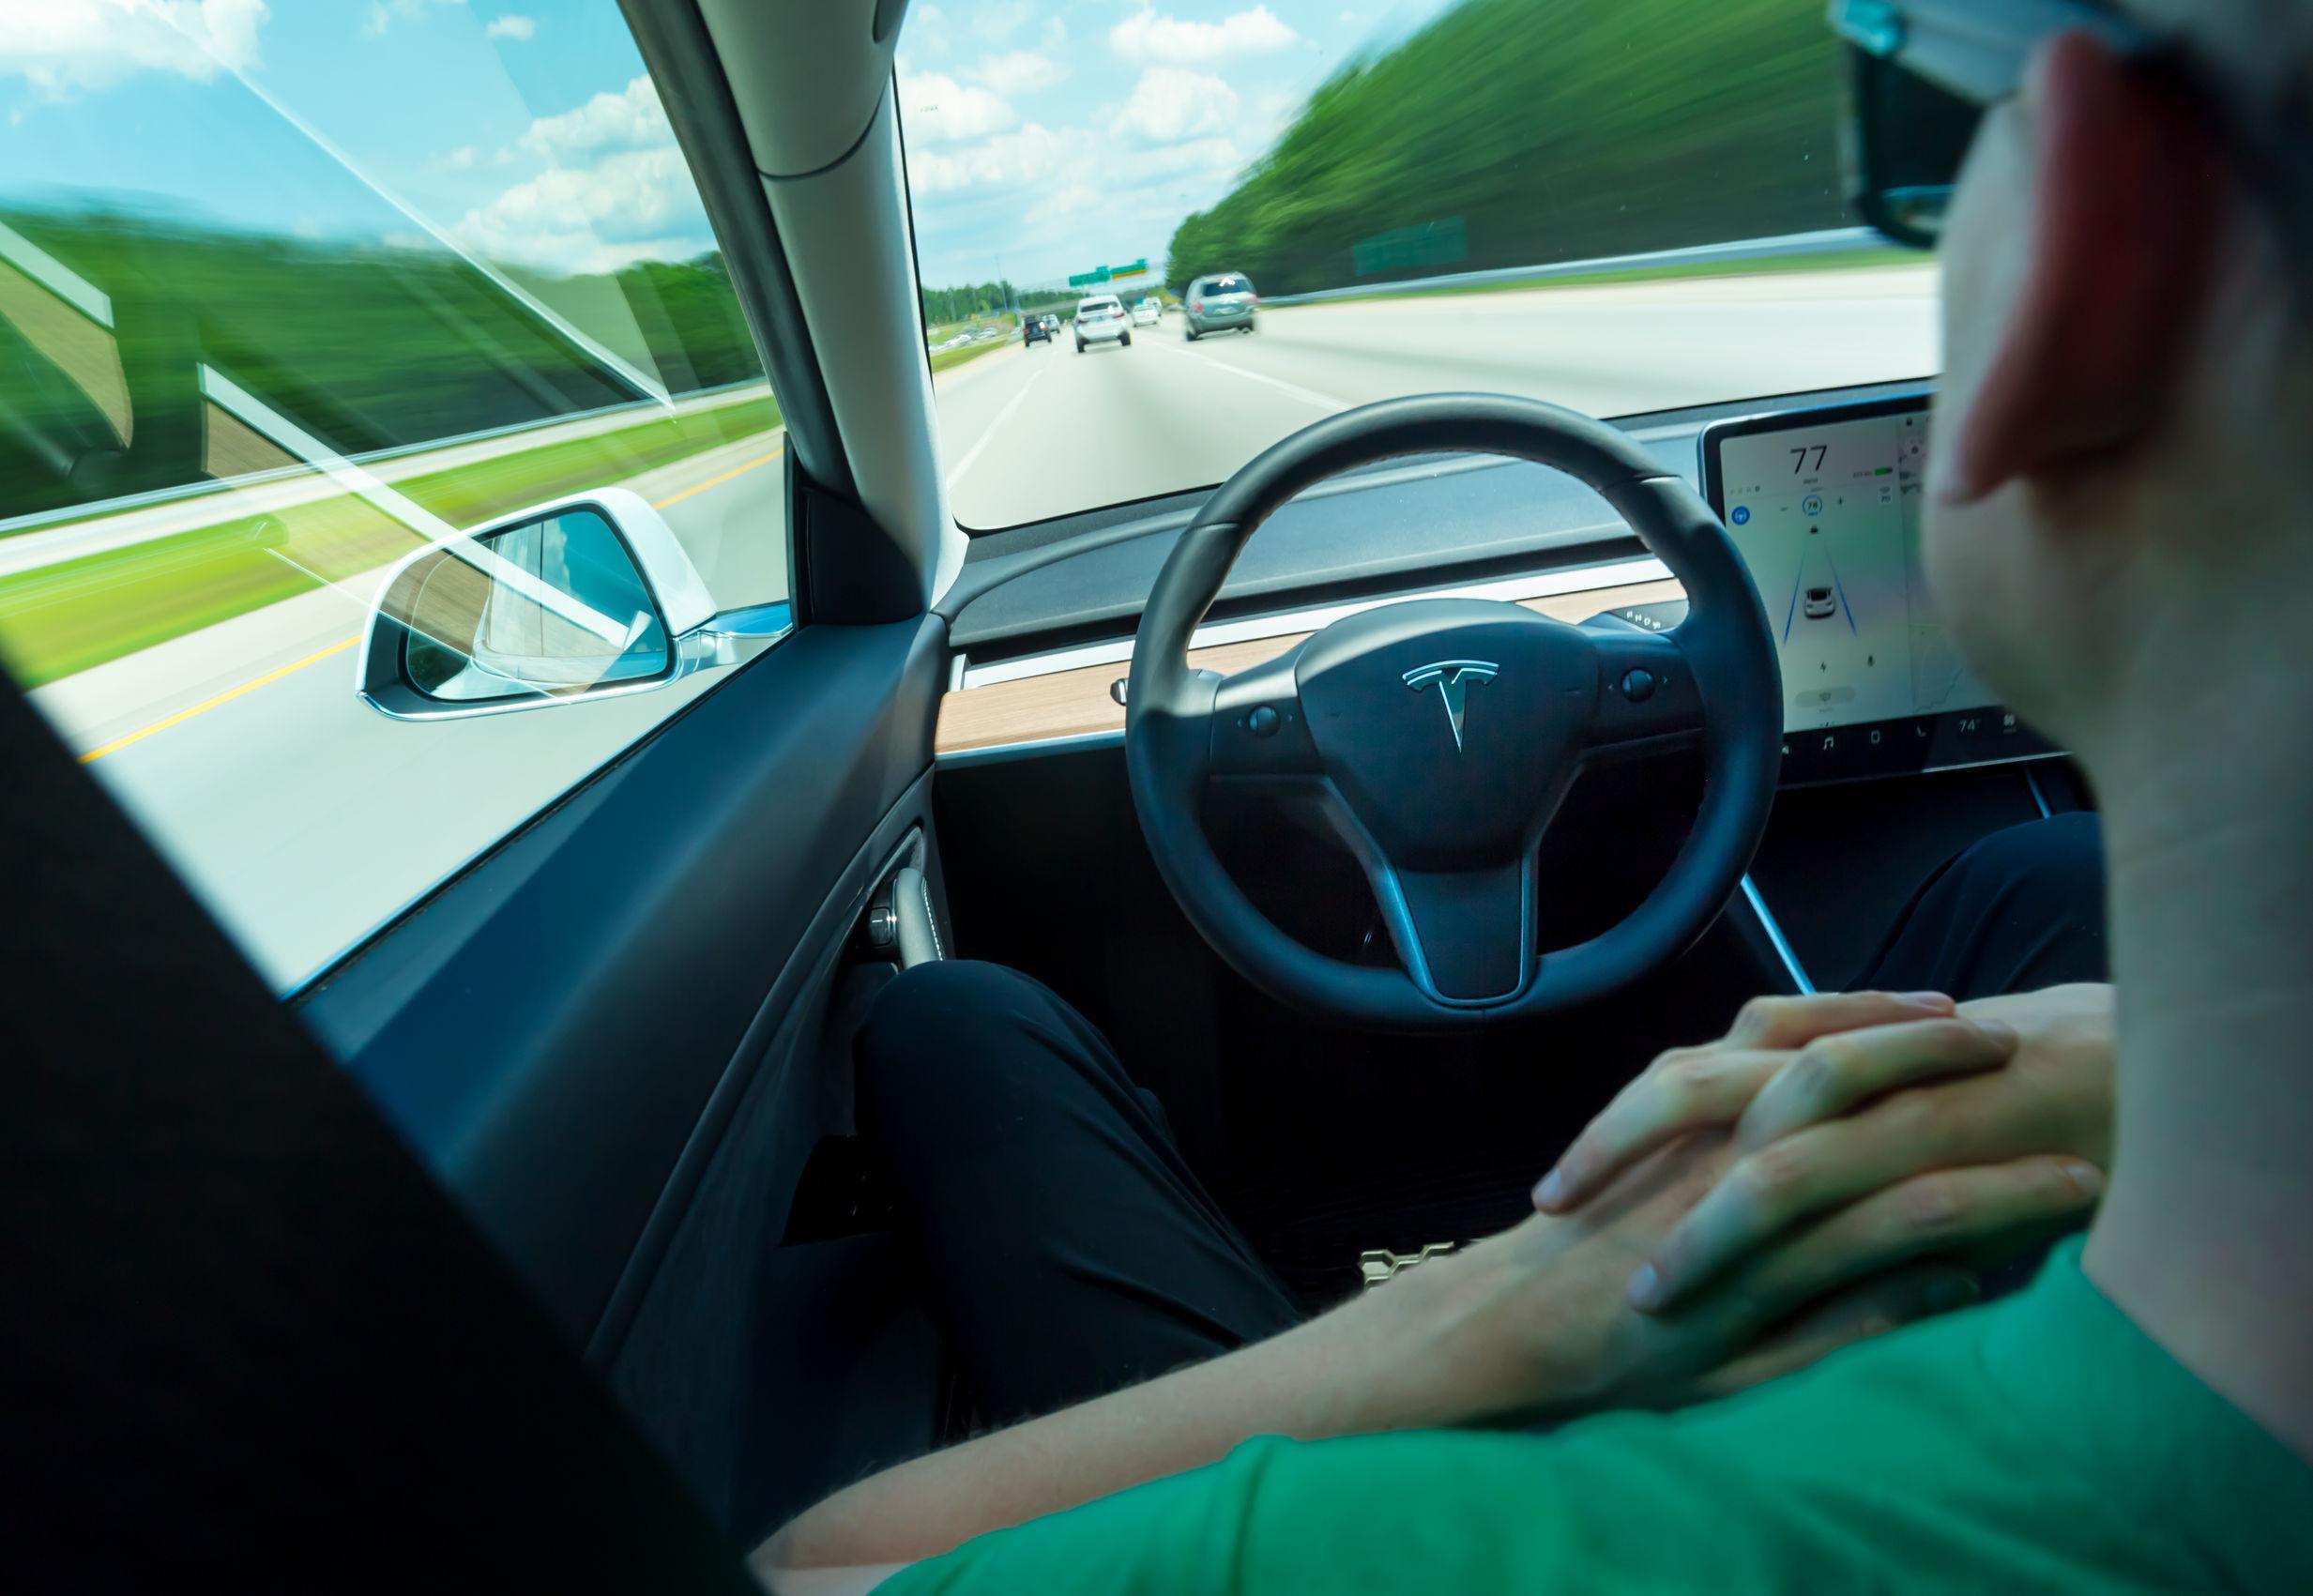 Guida Semi-Autonoma: il 22% dei conducenti si distrae più del dovuto